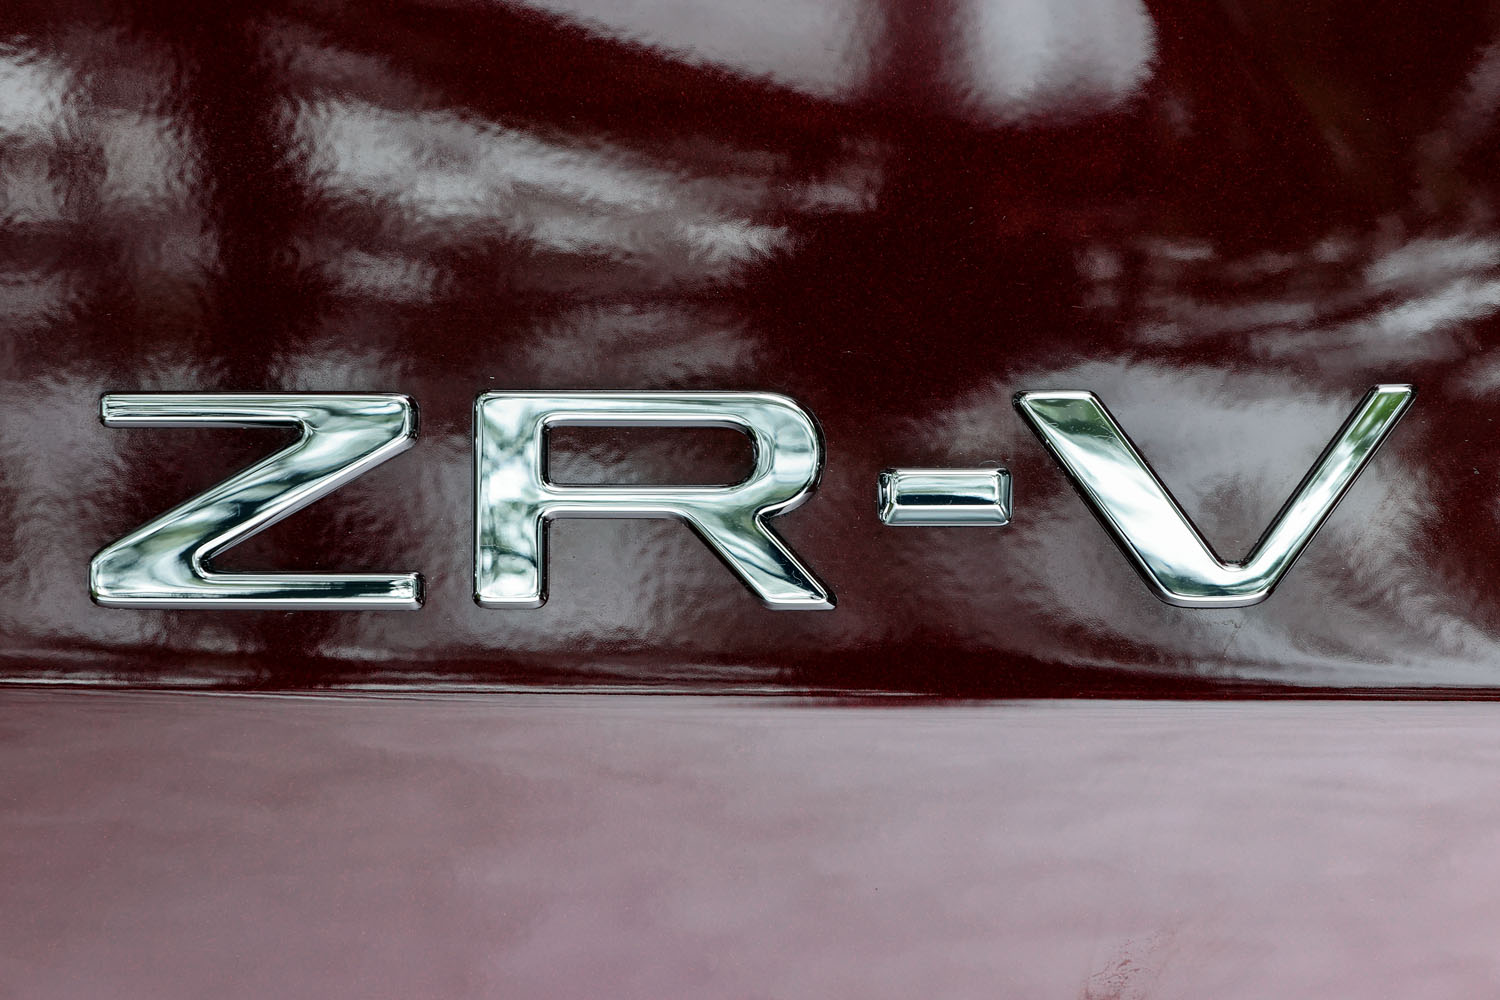 「ZR-V」の登場により、ホンダ製SUVのグローバルモデルは3台体制に。ただし新型「CR-V」は日本では販売されず、ZR-Vはその後継としての役割も負うこととなる。